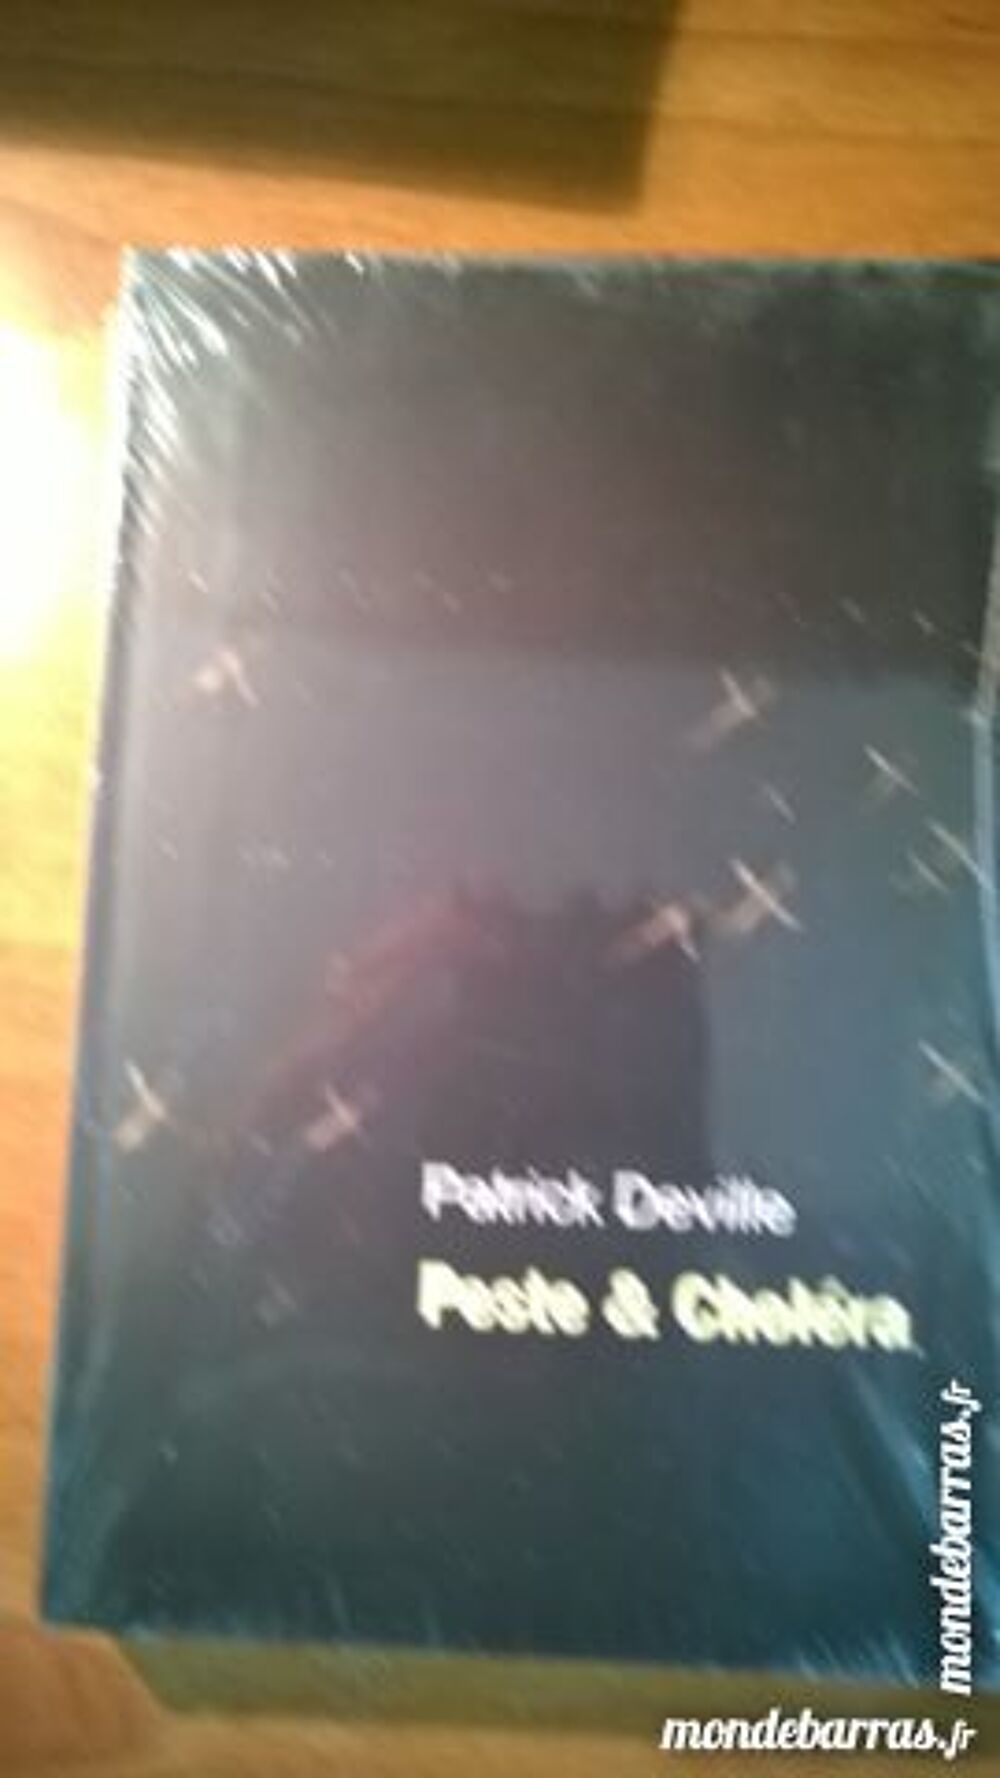 Patrick Deville - Peste &amp; Chol&eacute;ra Livres et BD